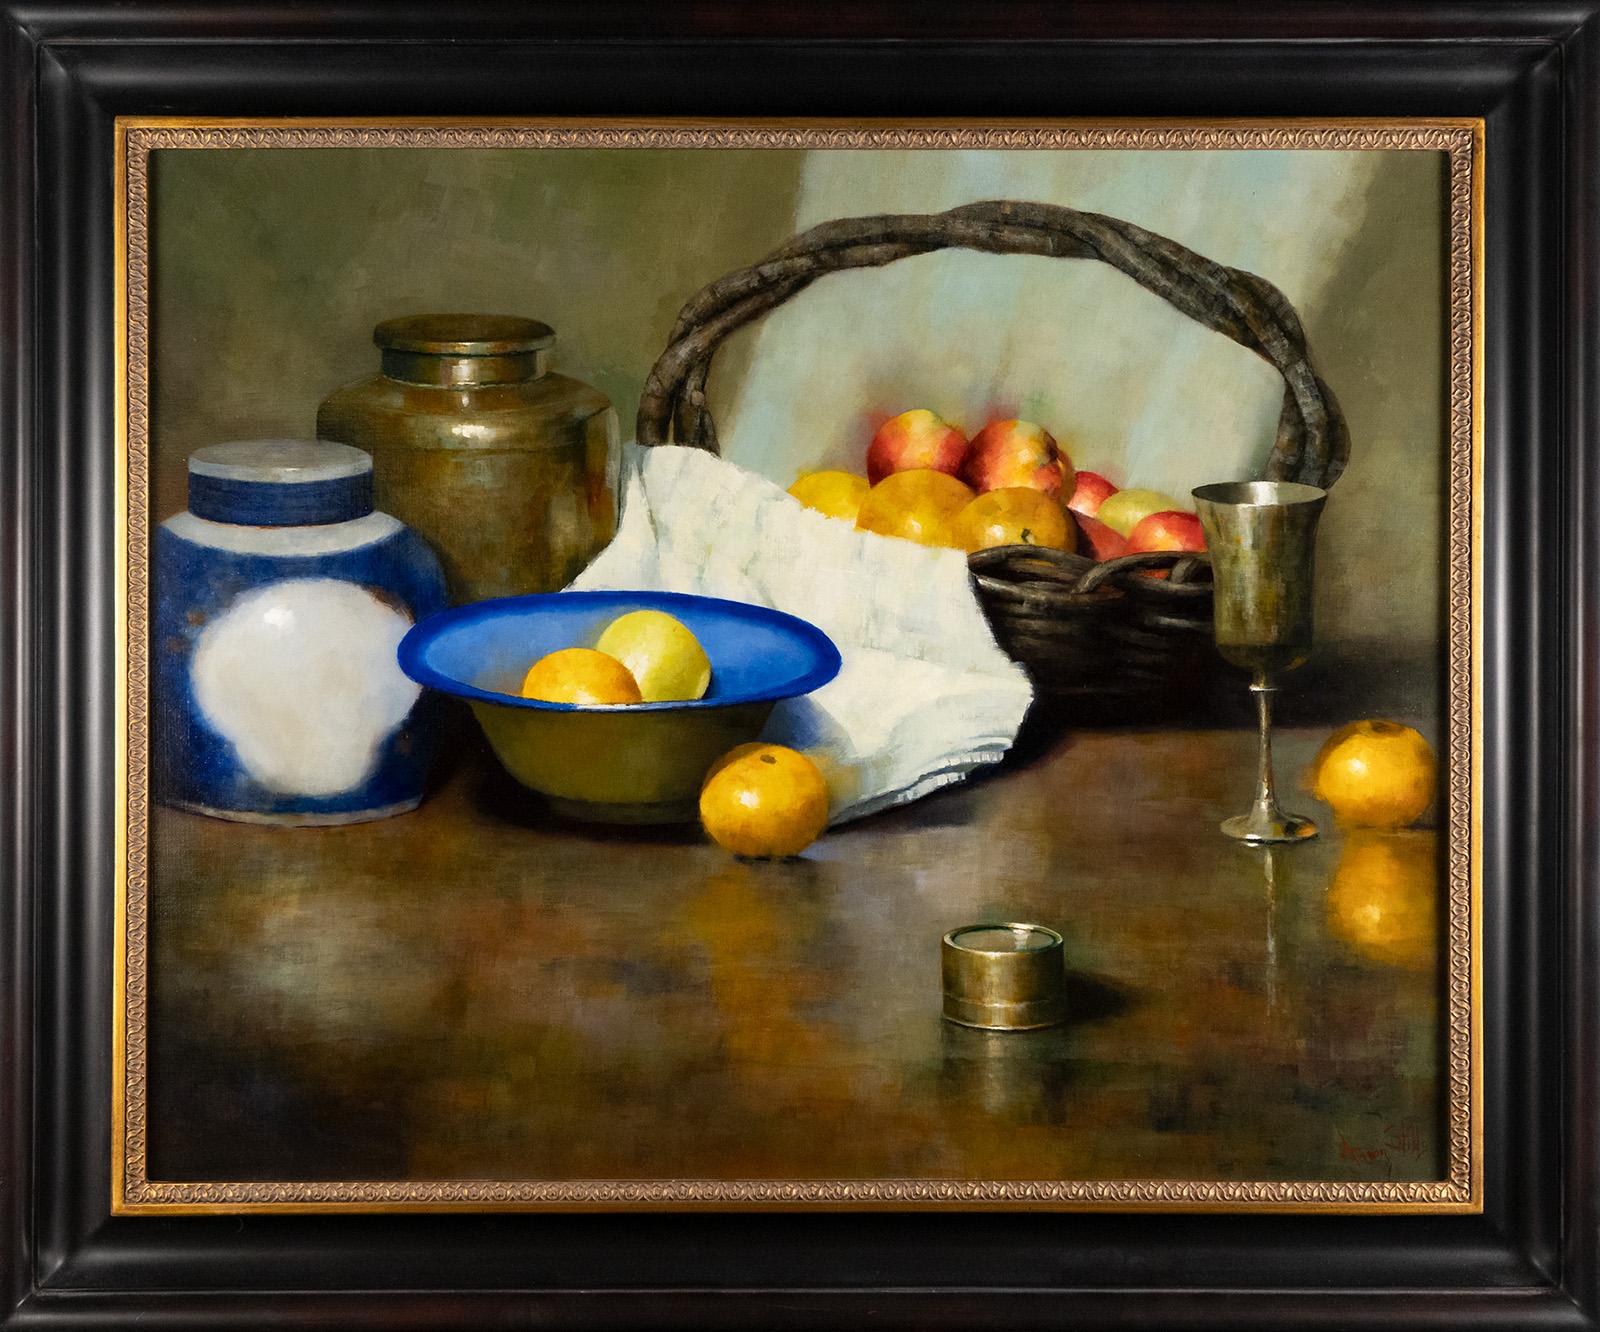 fruit basket painting